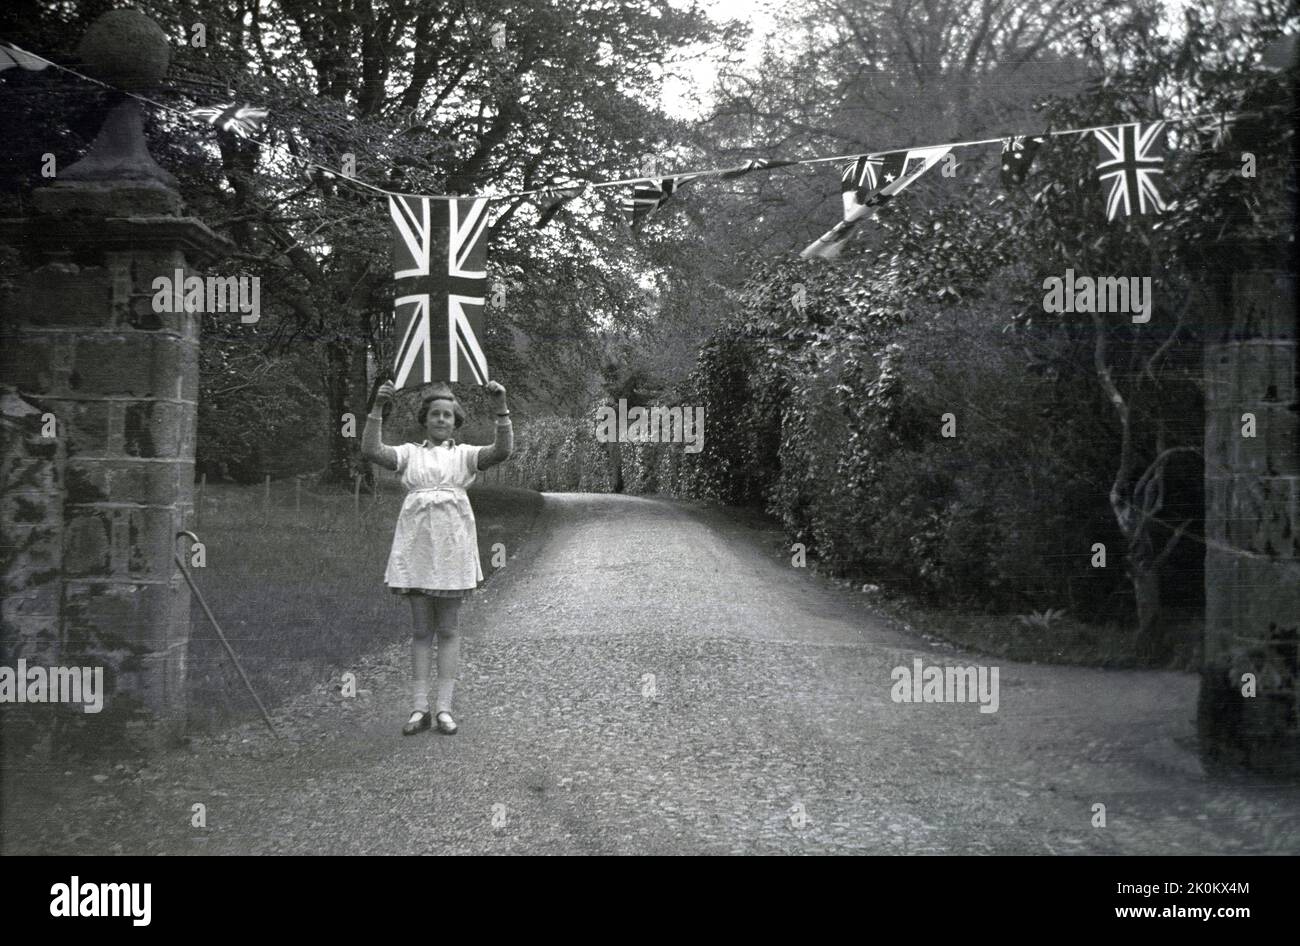 1937, historique, à une entrée de la propriété de Forcet Hall, North Yorkshire, Angleterre, Royaume-Uni, une jeune fille tenant un drapeau de l'Union Jack sur le bandeau aérien, célébrant le couronnement de George VI en tant que roi. Banque D'Images